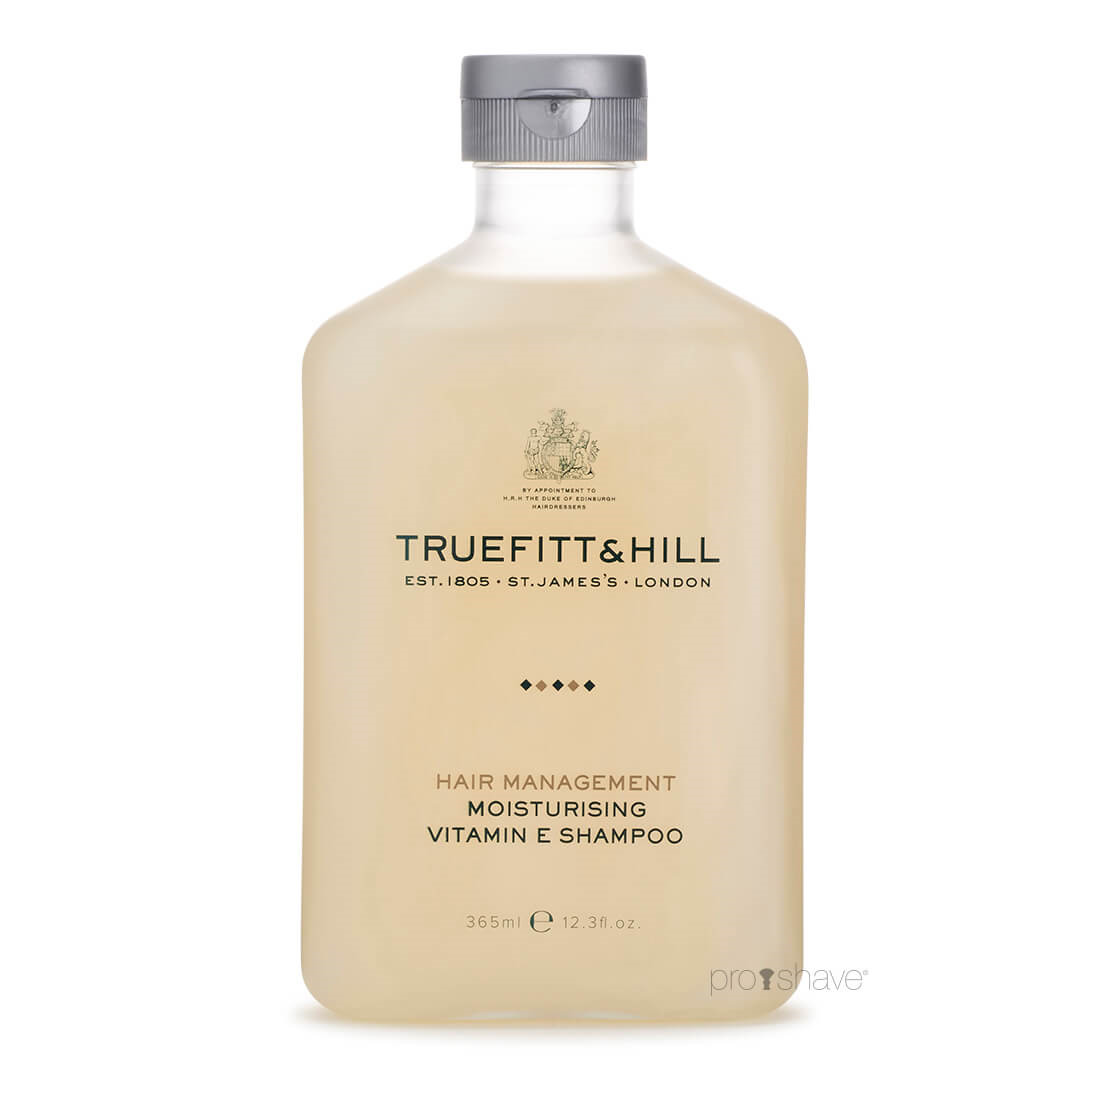 4: Truefitt & Hill Moisturising Vitamin E Shampoo, 365 ml.